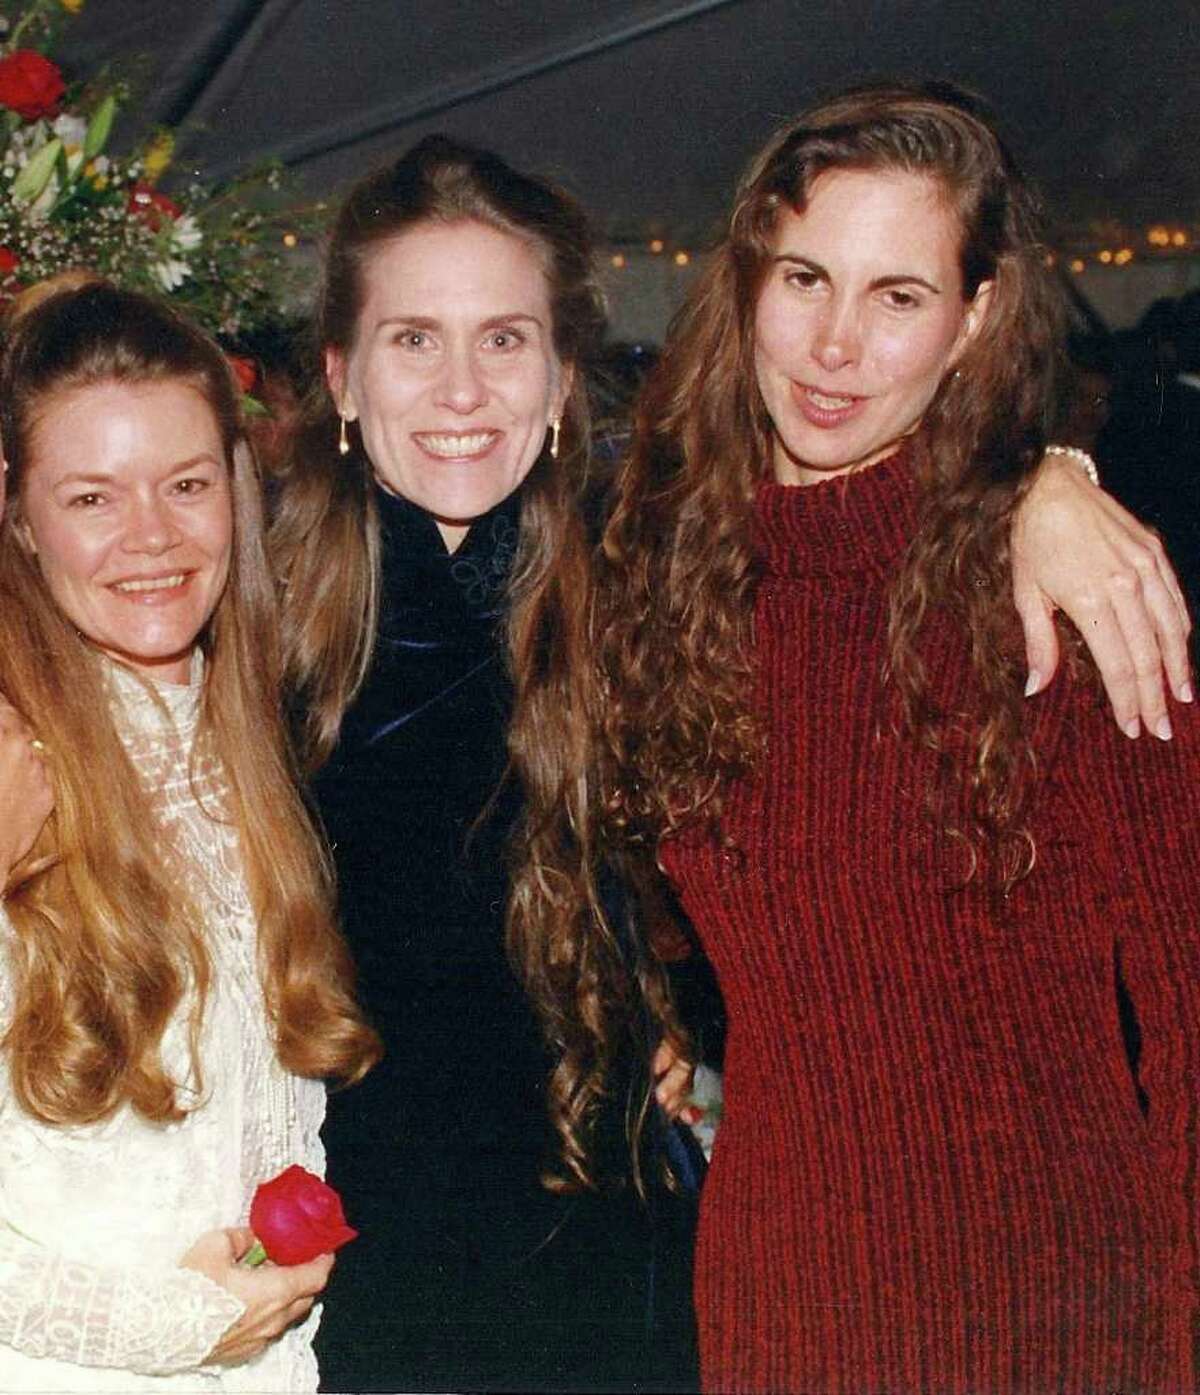 Barbara Jeske, Karen Unterreiner and Pamela Cafritz.